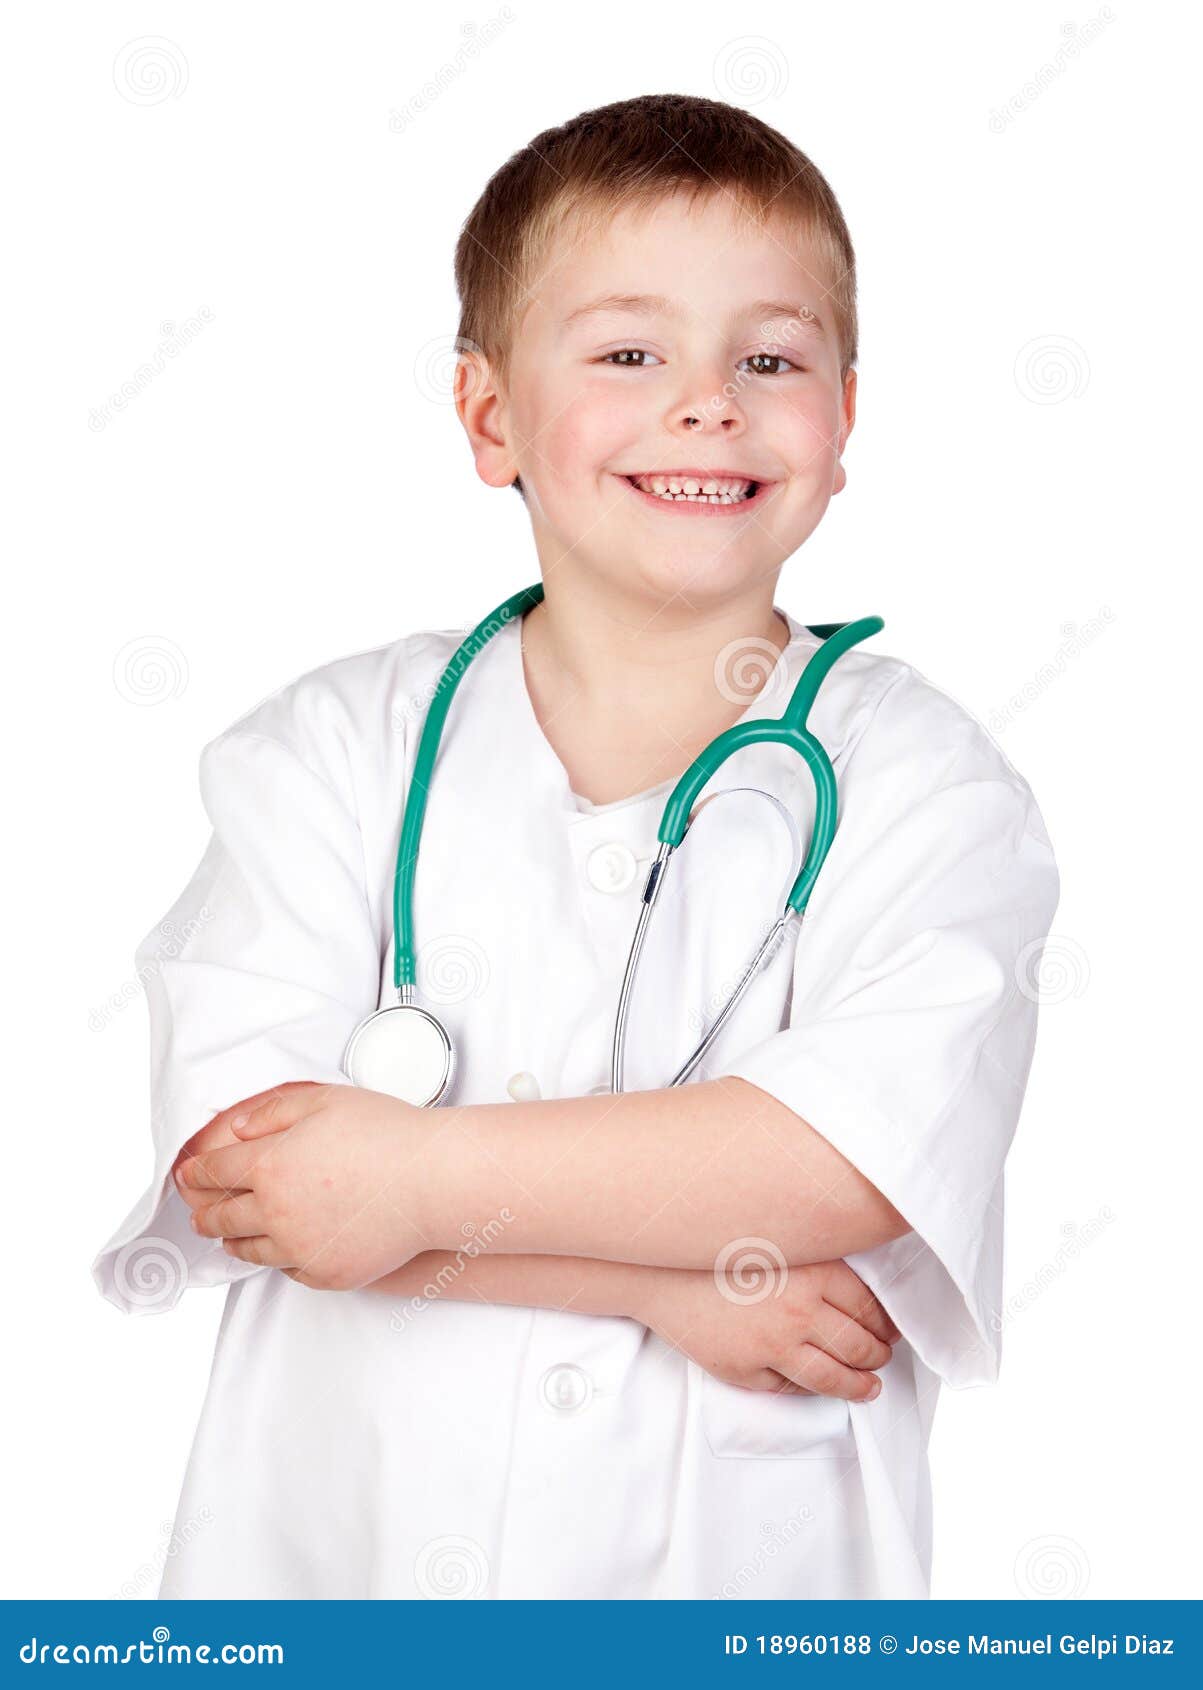 Docteur enfant